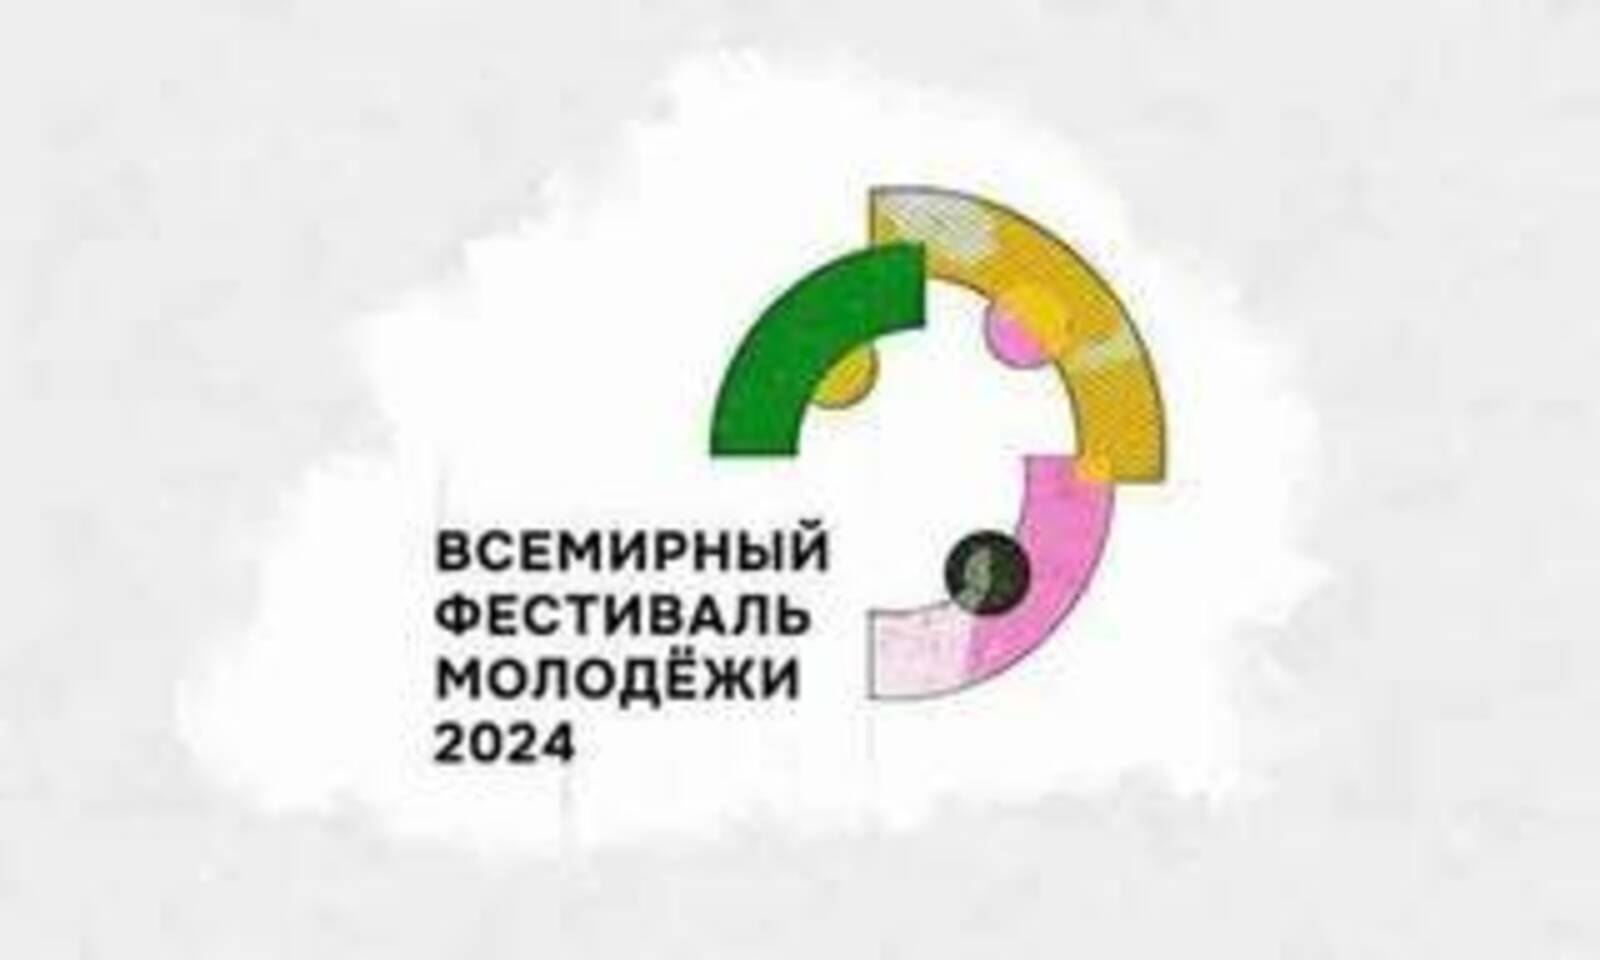 Молодежь Башкортостана готовится к участию во Всемирном фестивале молодежи